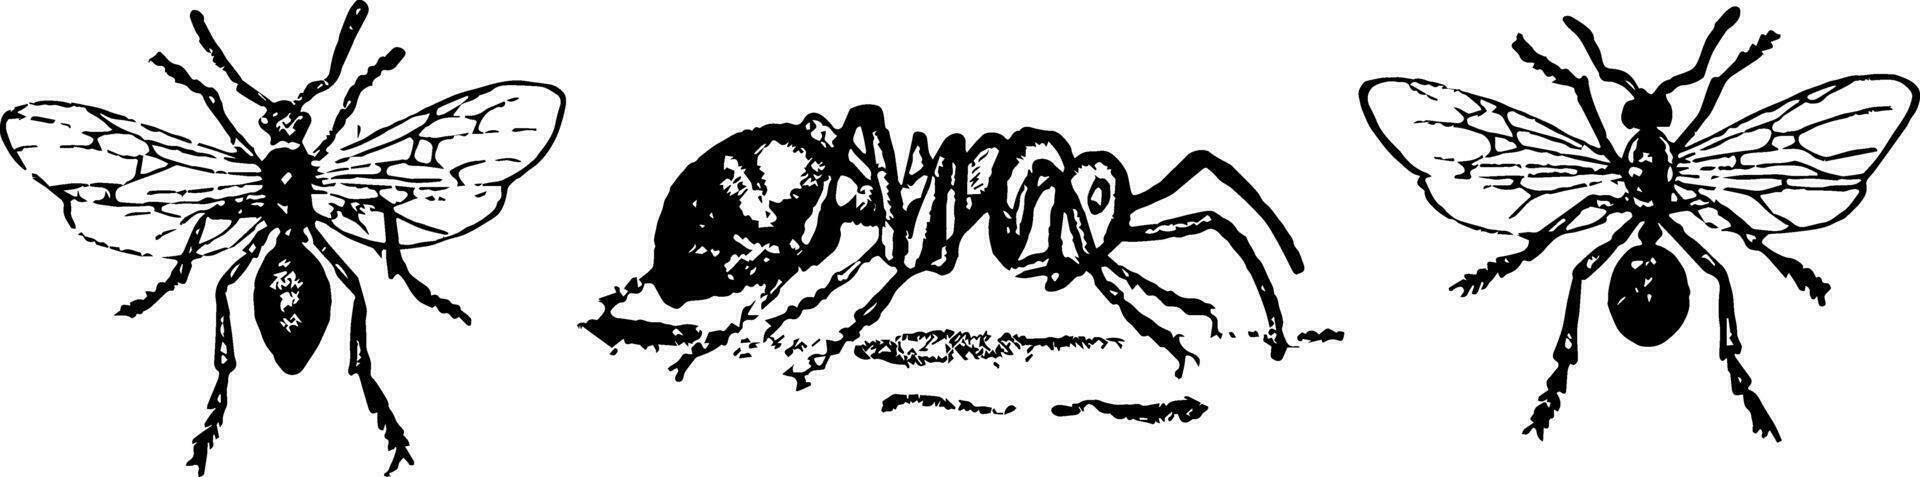 Red Ants, vintage illustration. vector